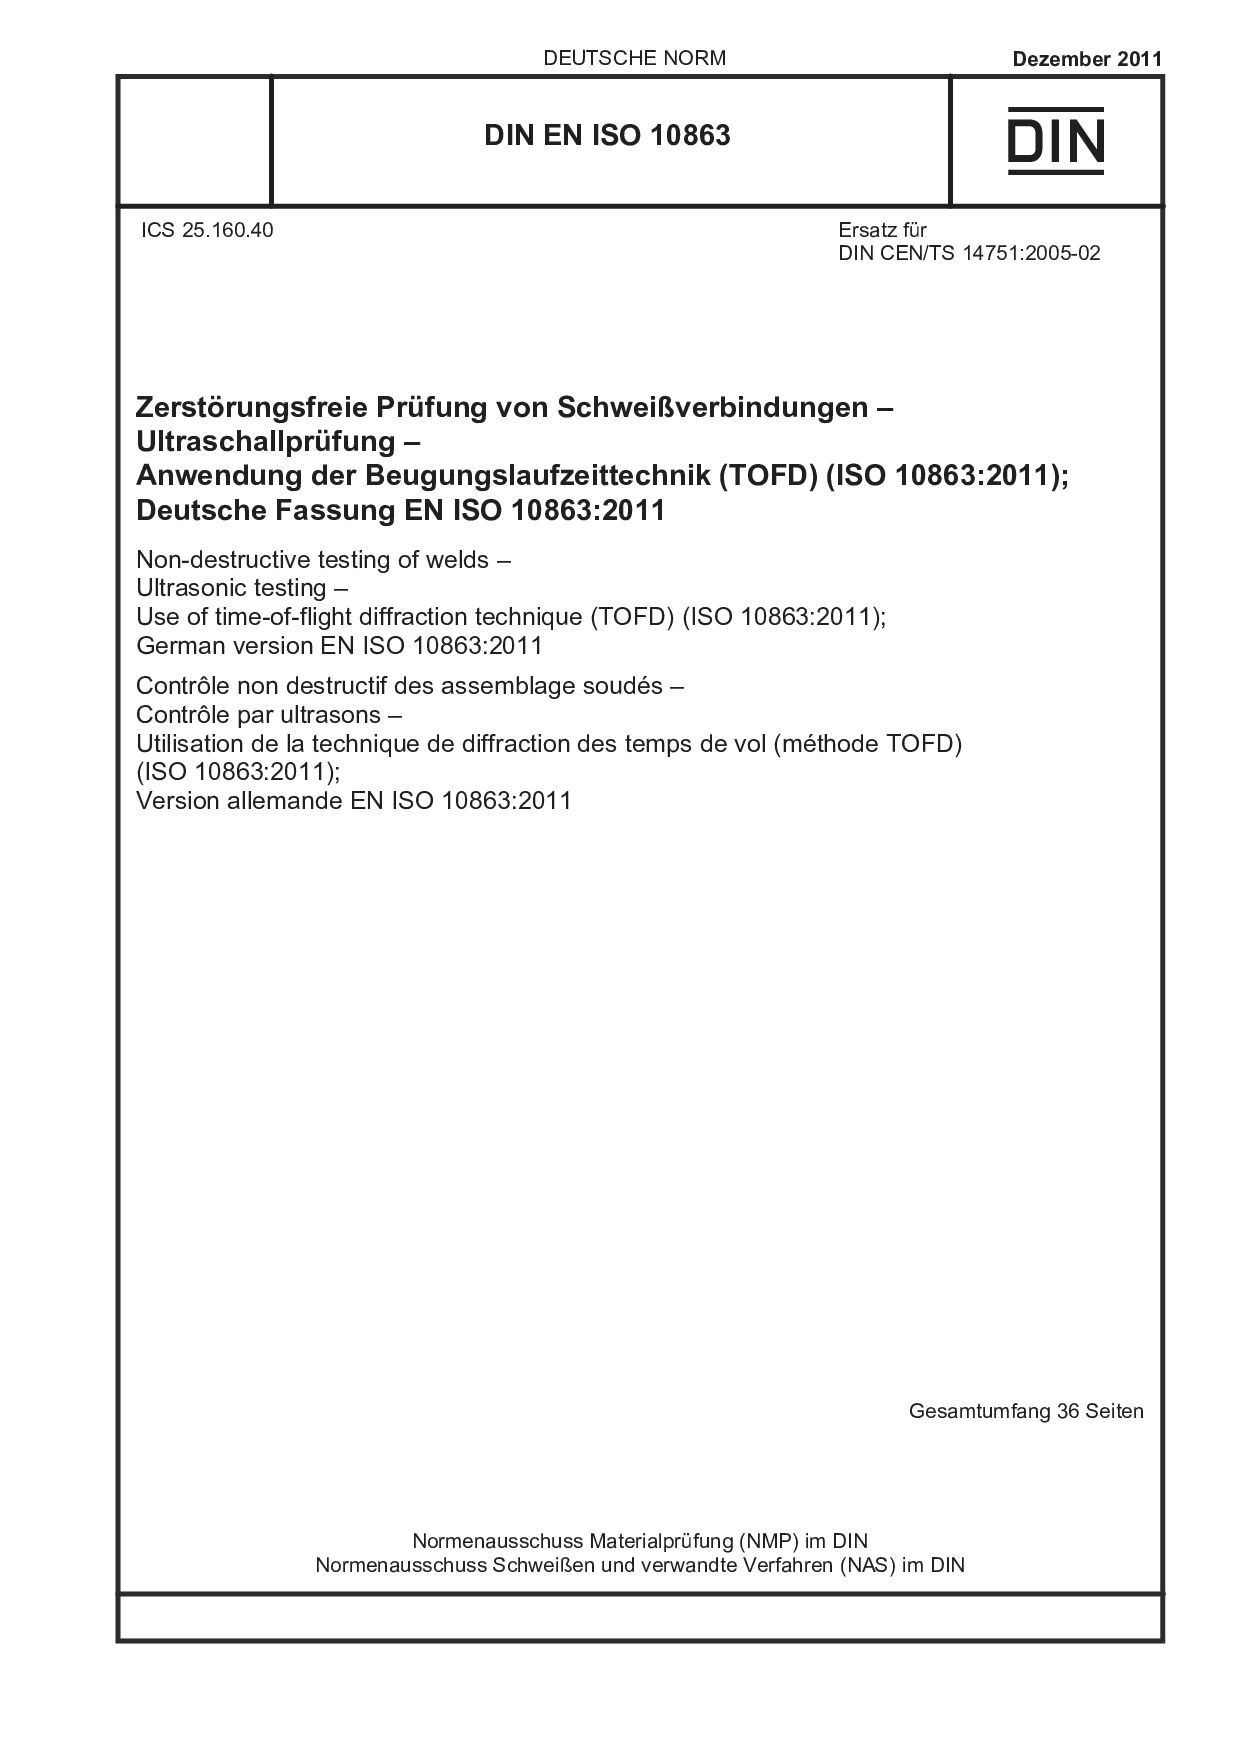 DIN EN ISO 10863:2011